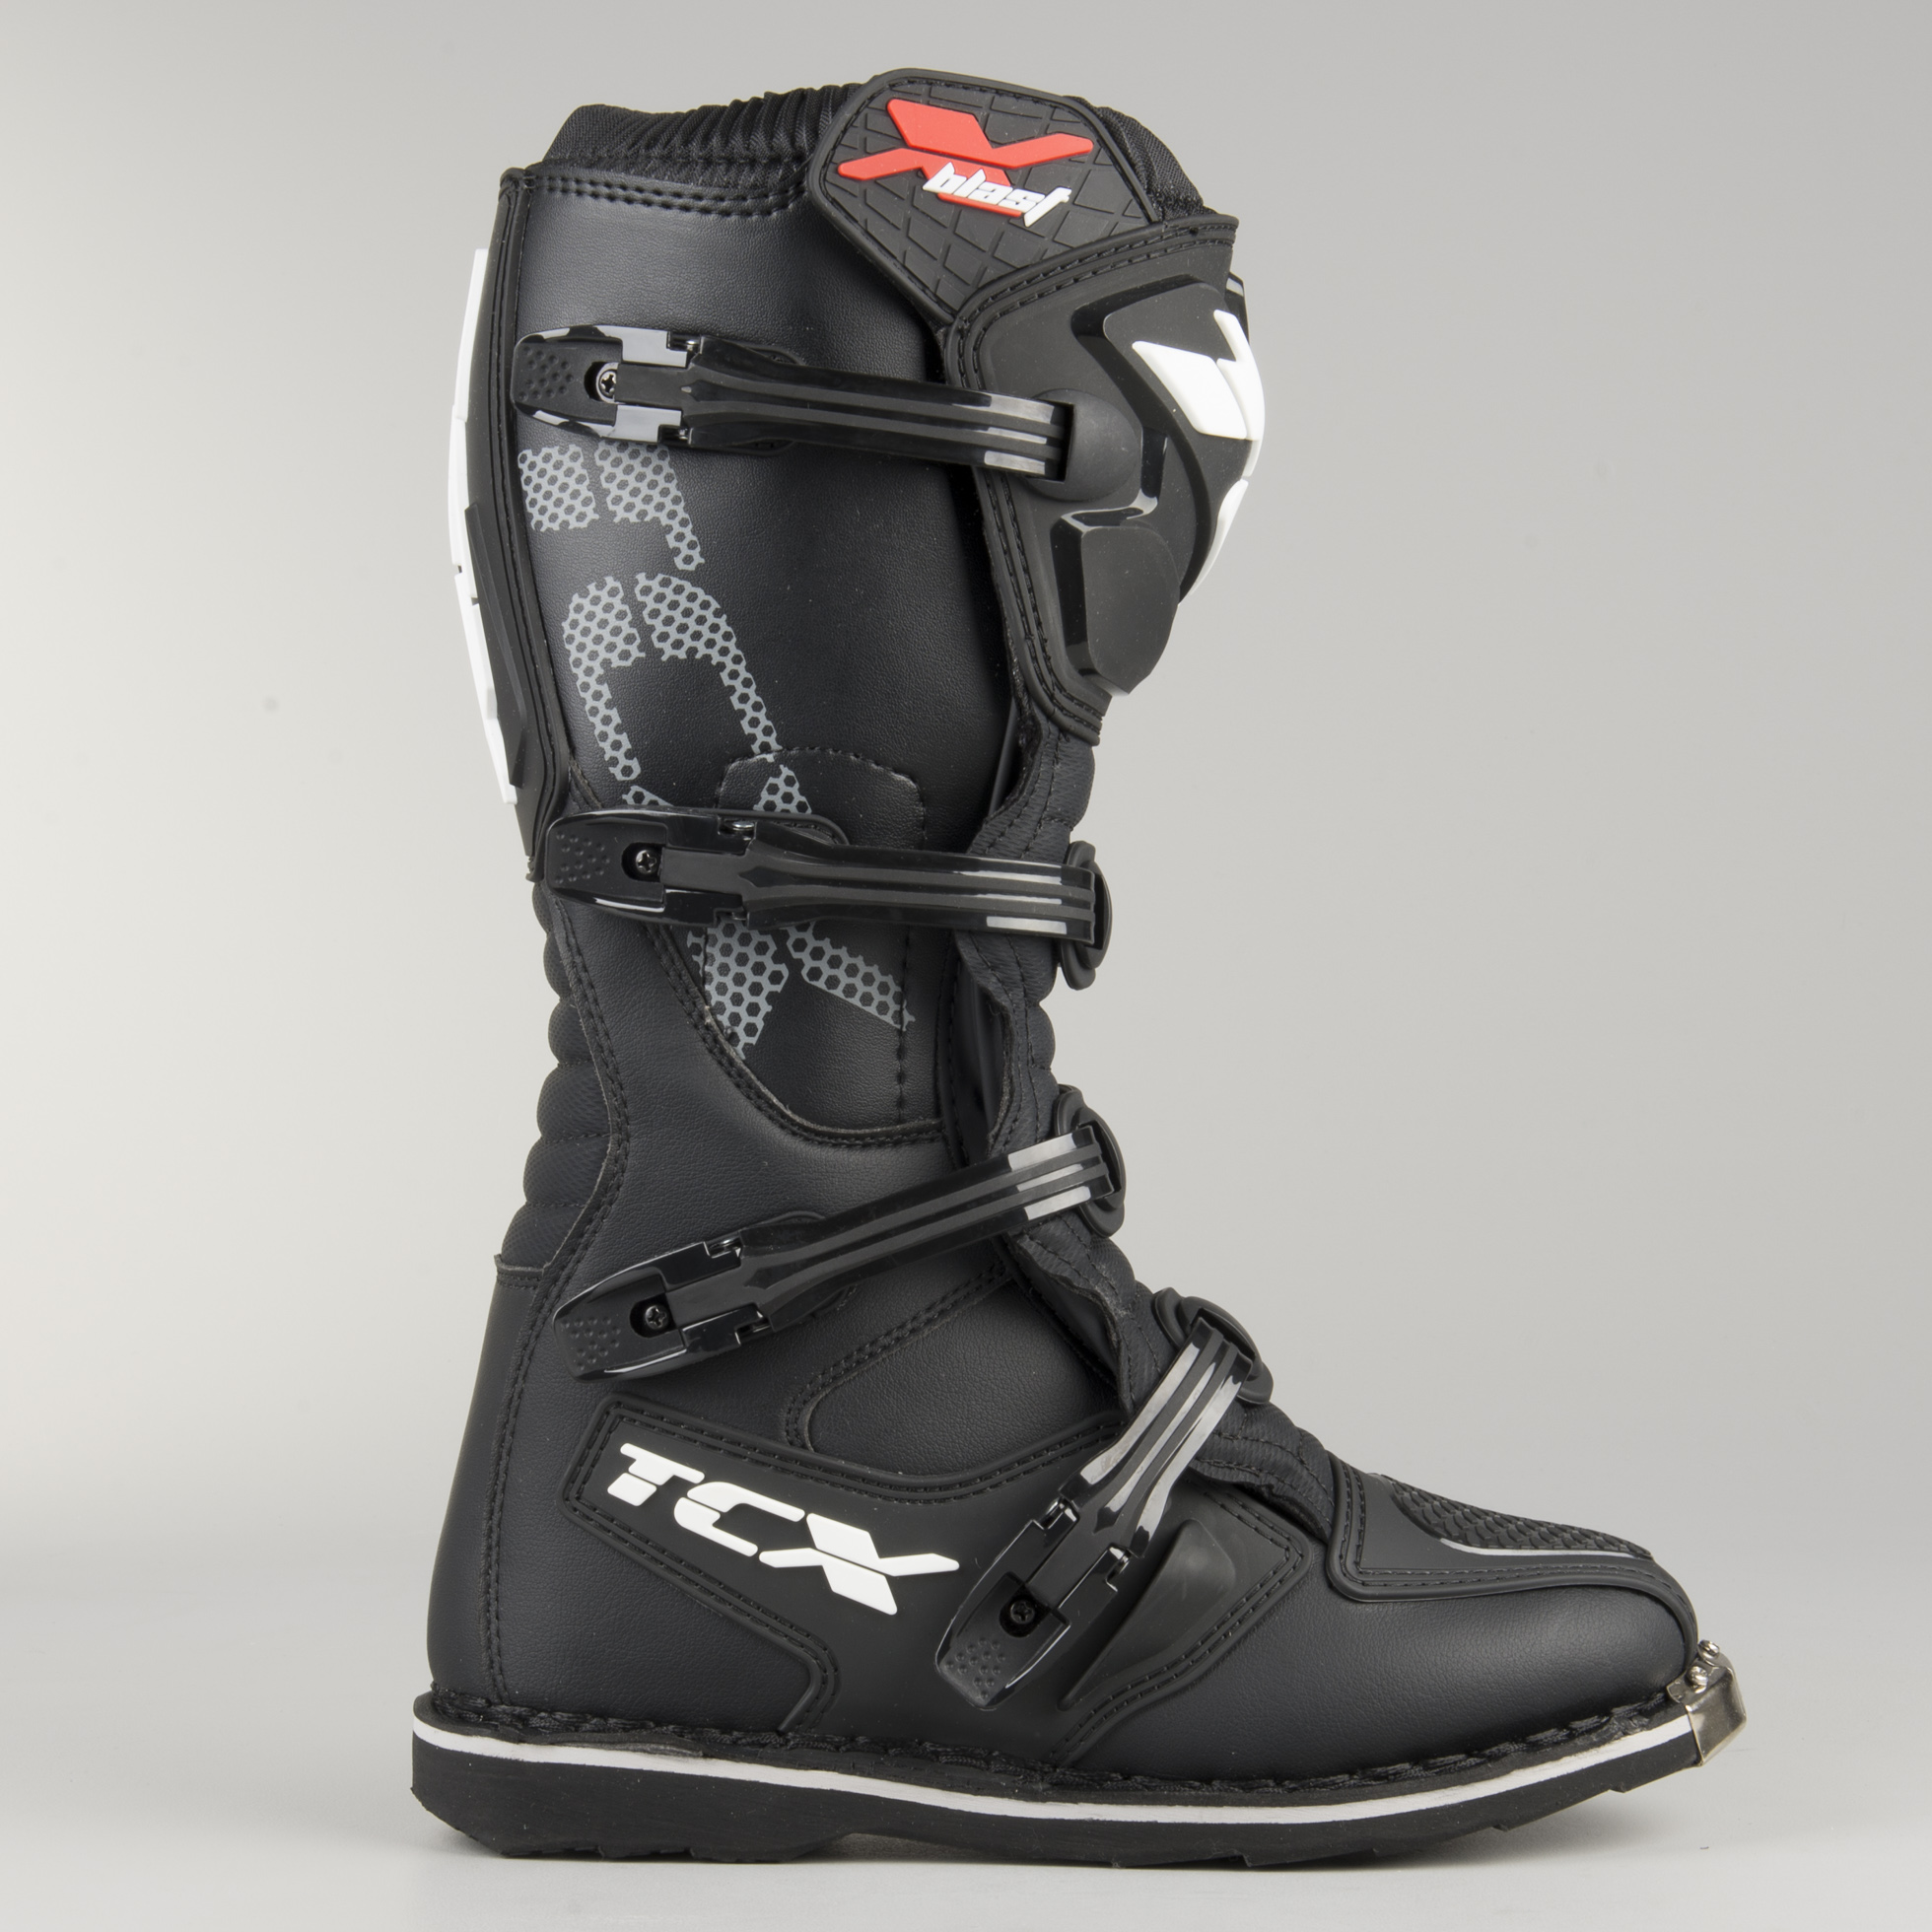 TCX X-Blast Boots Black - Now 10 